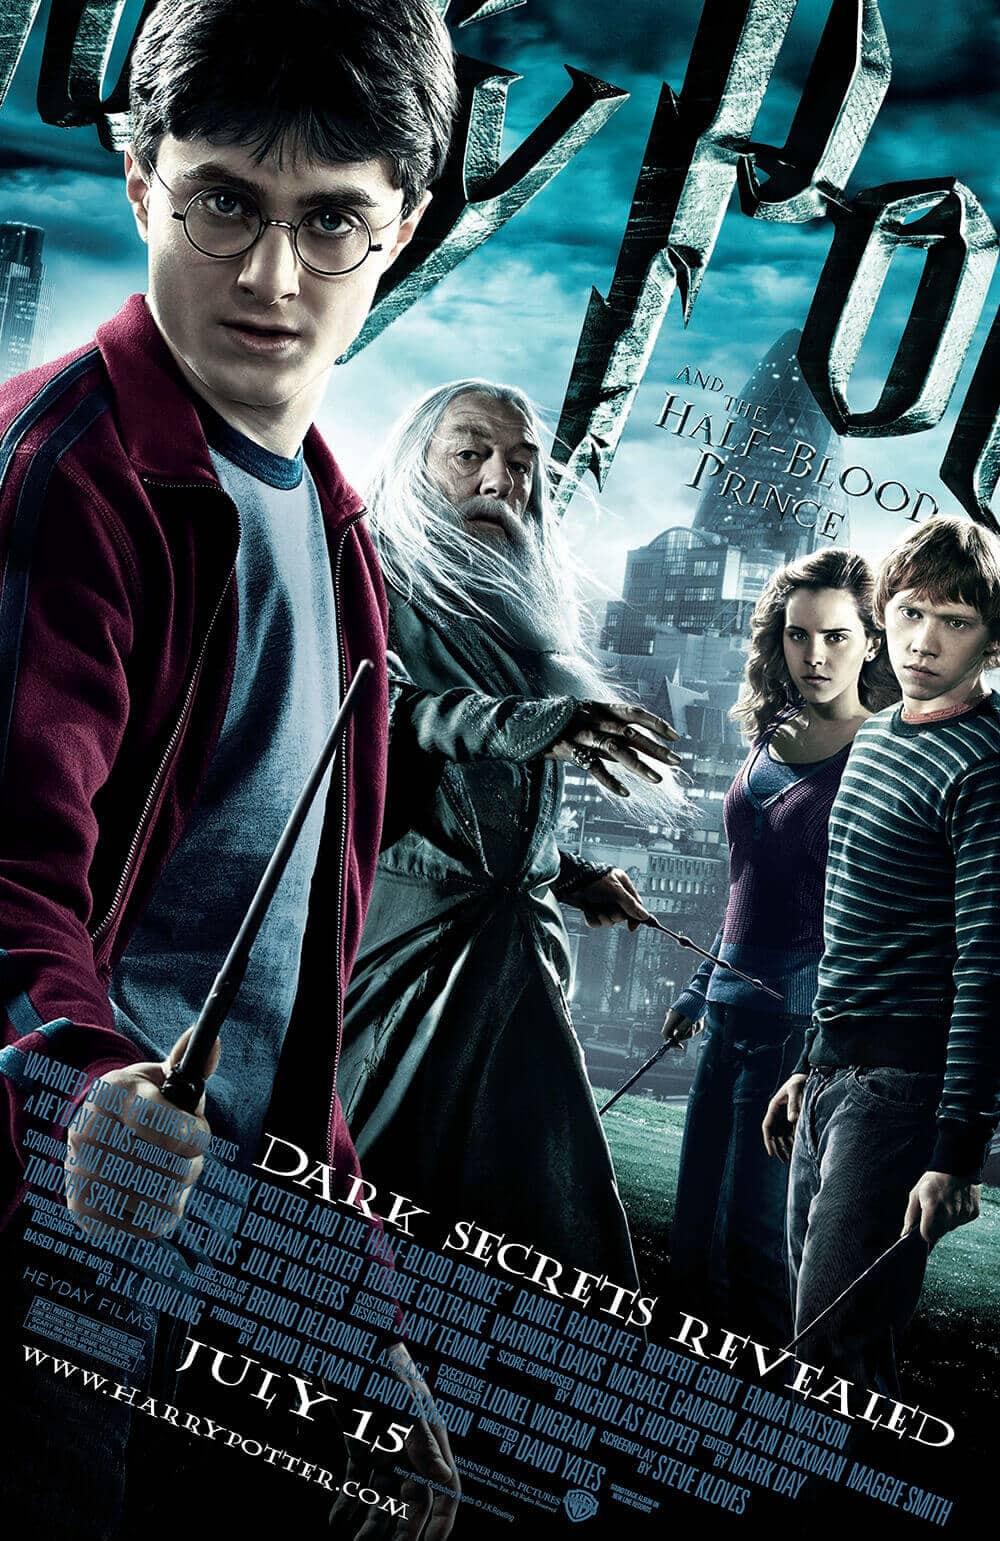 ดูหนังออนไลน์ฟรี Harry Potter and the Half-Blood Prince 6 แฮร์รี่ พอตเตอร์กับเจ้าชายเลือดผสม 2009 พากย์ไทย